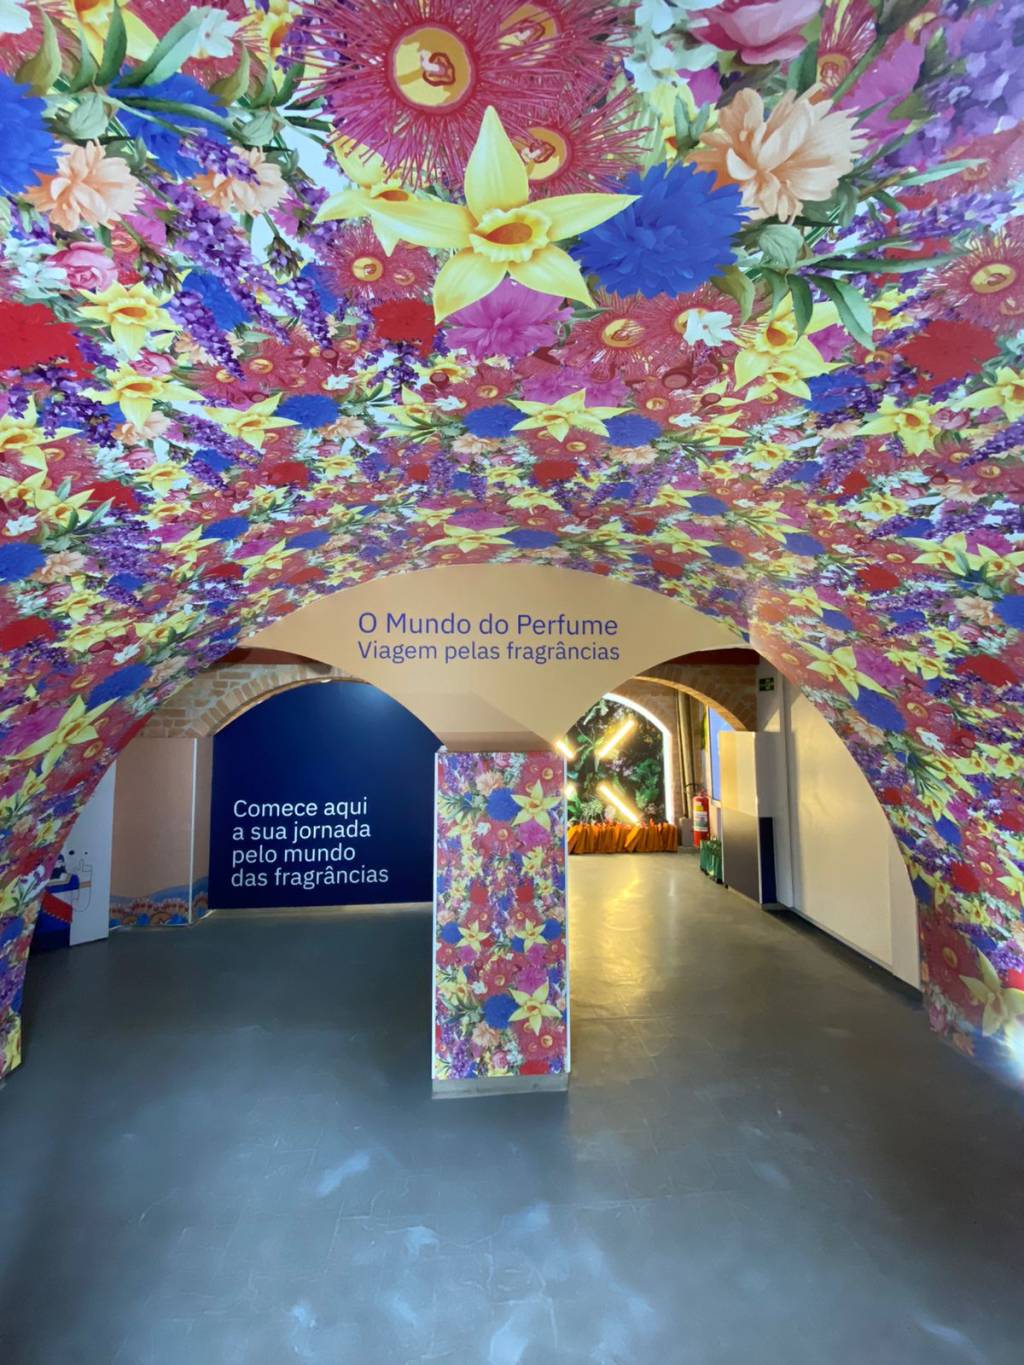 Arco con estampado floral en un espacio museístico.